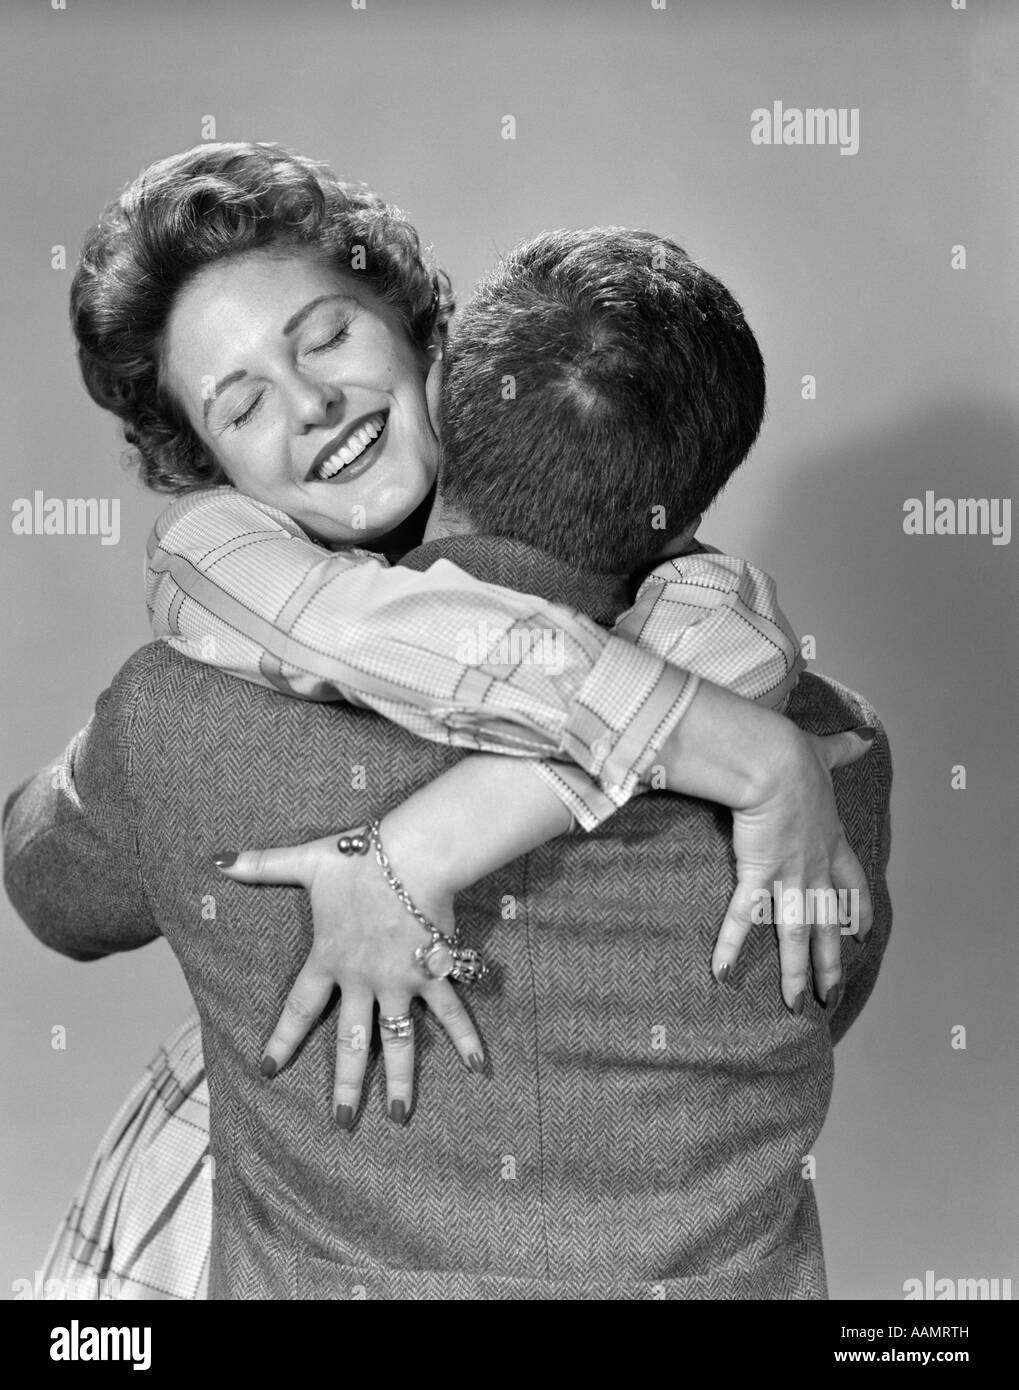 1950 Heureux COUPLE SMILING WOMAN FACE À L'AVANT MAINS DRAPÉ SUR MANS RETOUR HUGGING EMBRASSANT HEUREUX AMOUR Banque D'Images